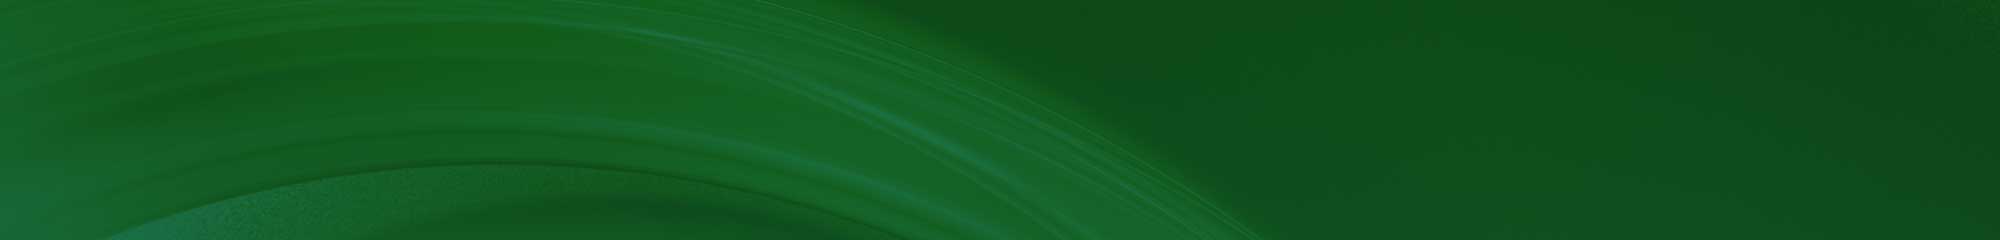 Encorp green color